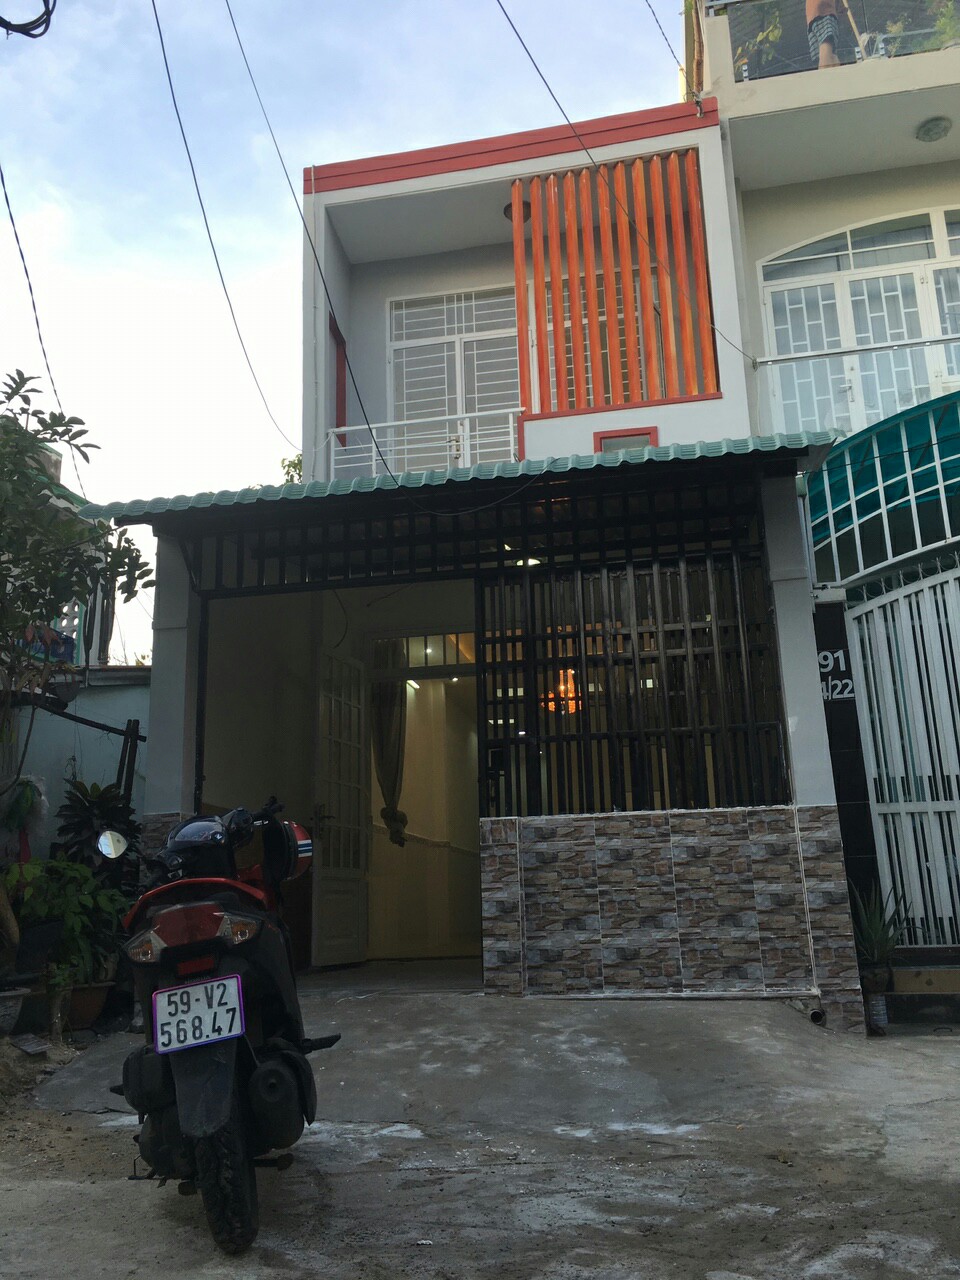 Bán nhà 1 trệt 1 lầu đường Nguyễn Kiệm, ngay bệnh viện 175, cách Adora chỉ 200m